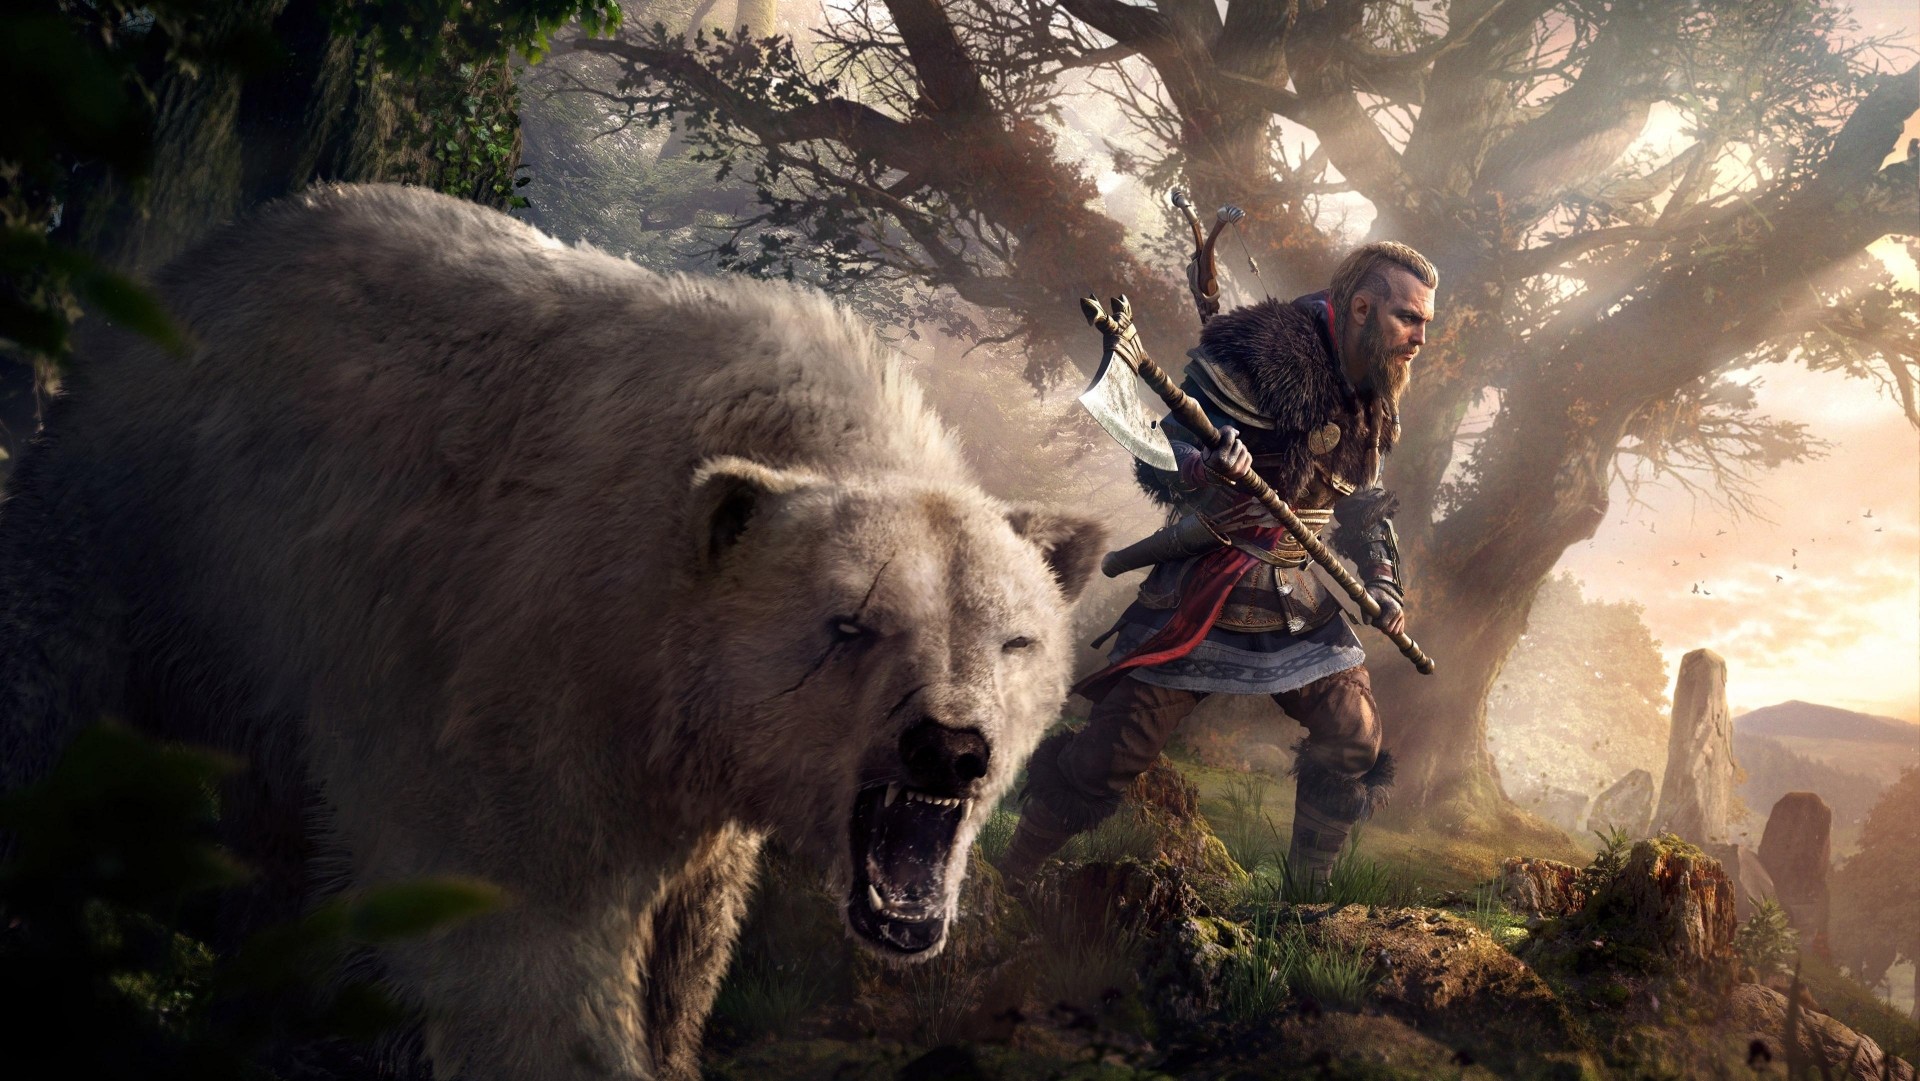 Assassin's Creed Вальгалла PS5 107 серия война с пиктами две стороны чести